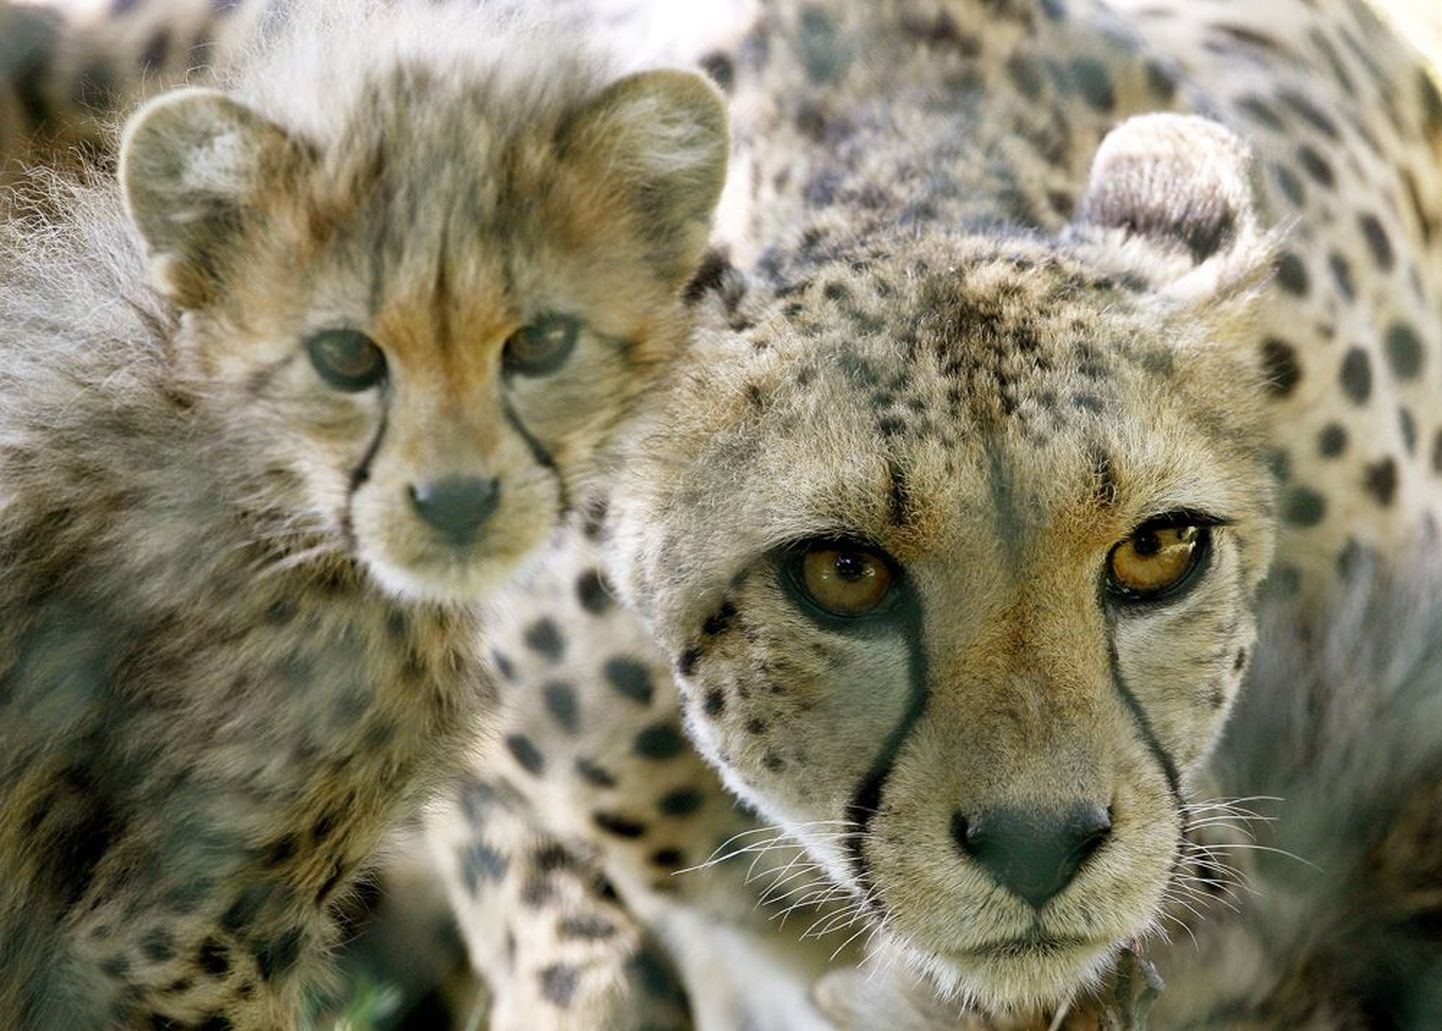 India soovib gepardid uuesti ellu äratada.